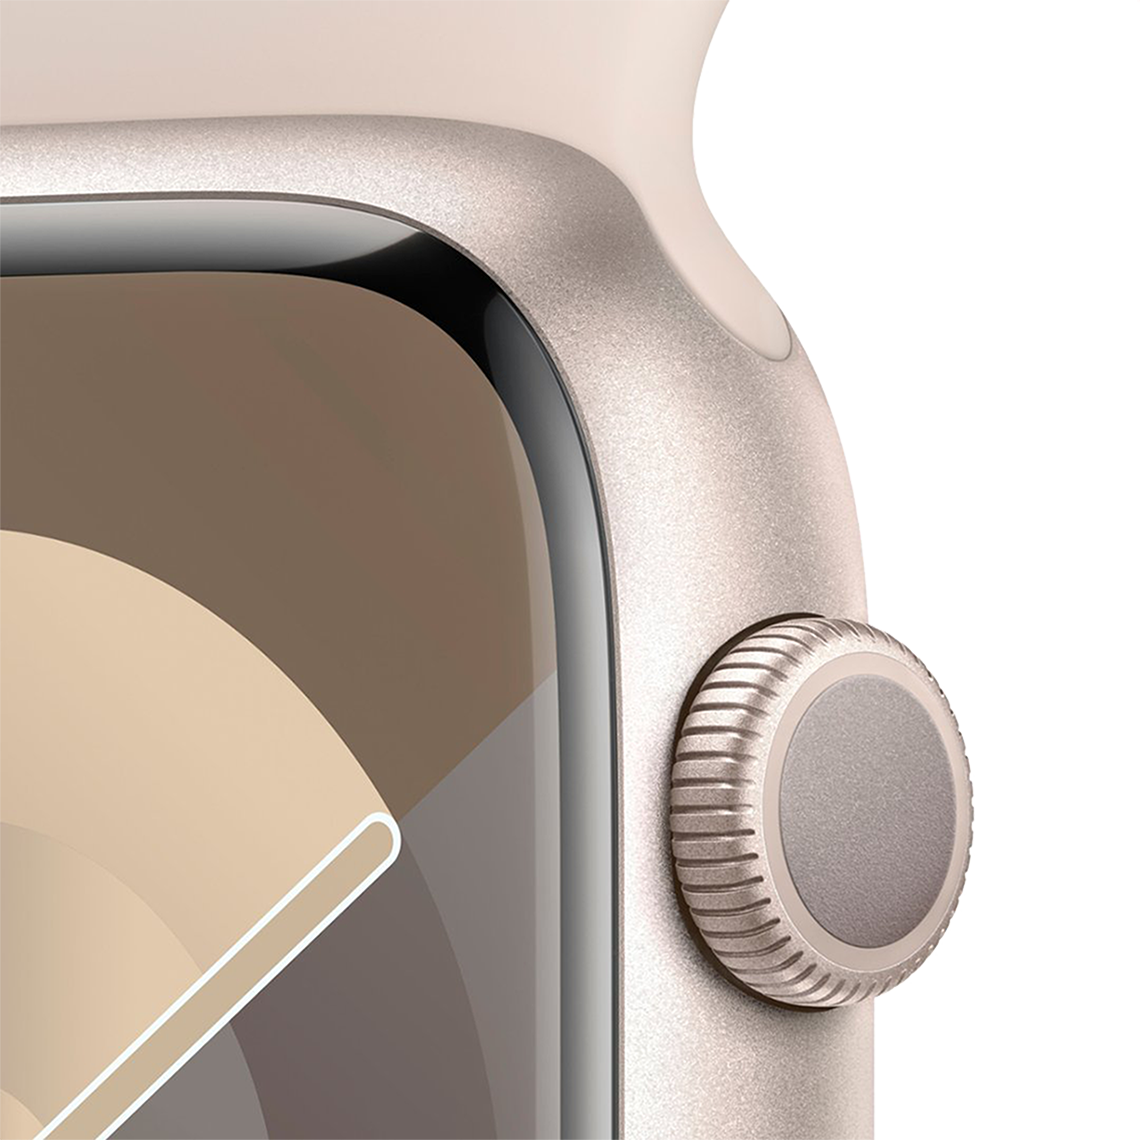 Apple Watch Series 9 41mm GPS - Starlight w/ M/L Starlight Sports Band, Grade B